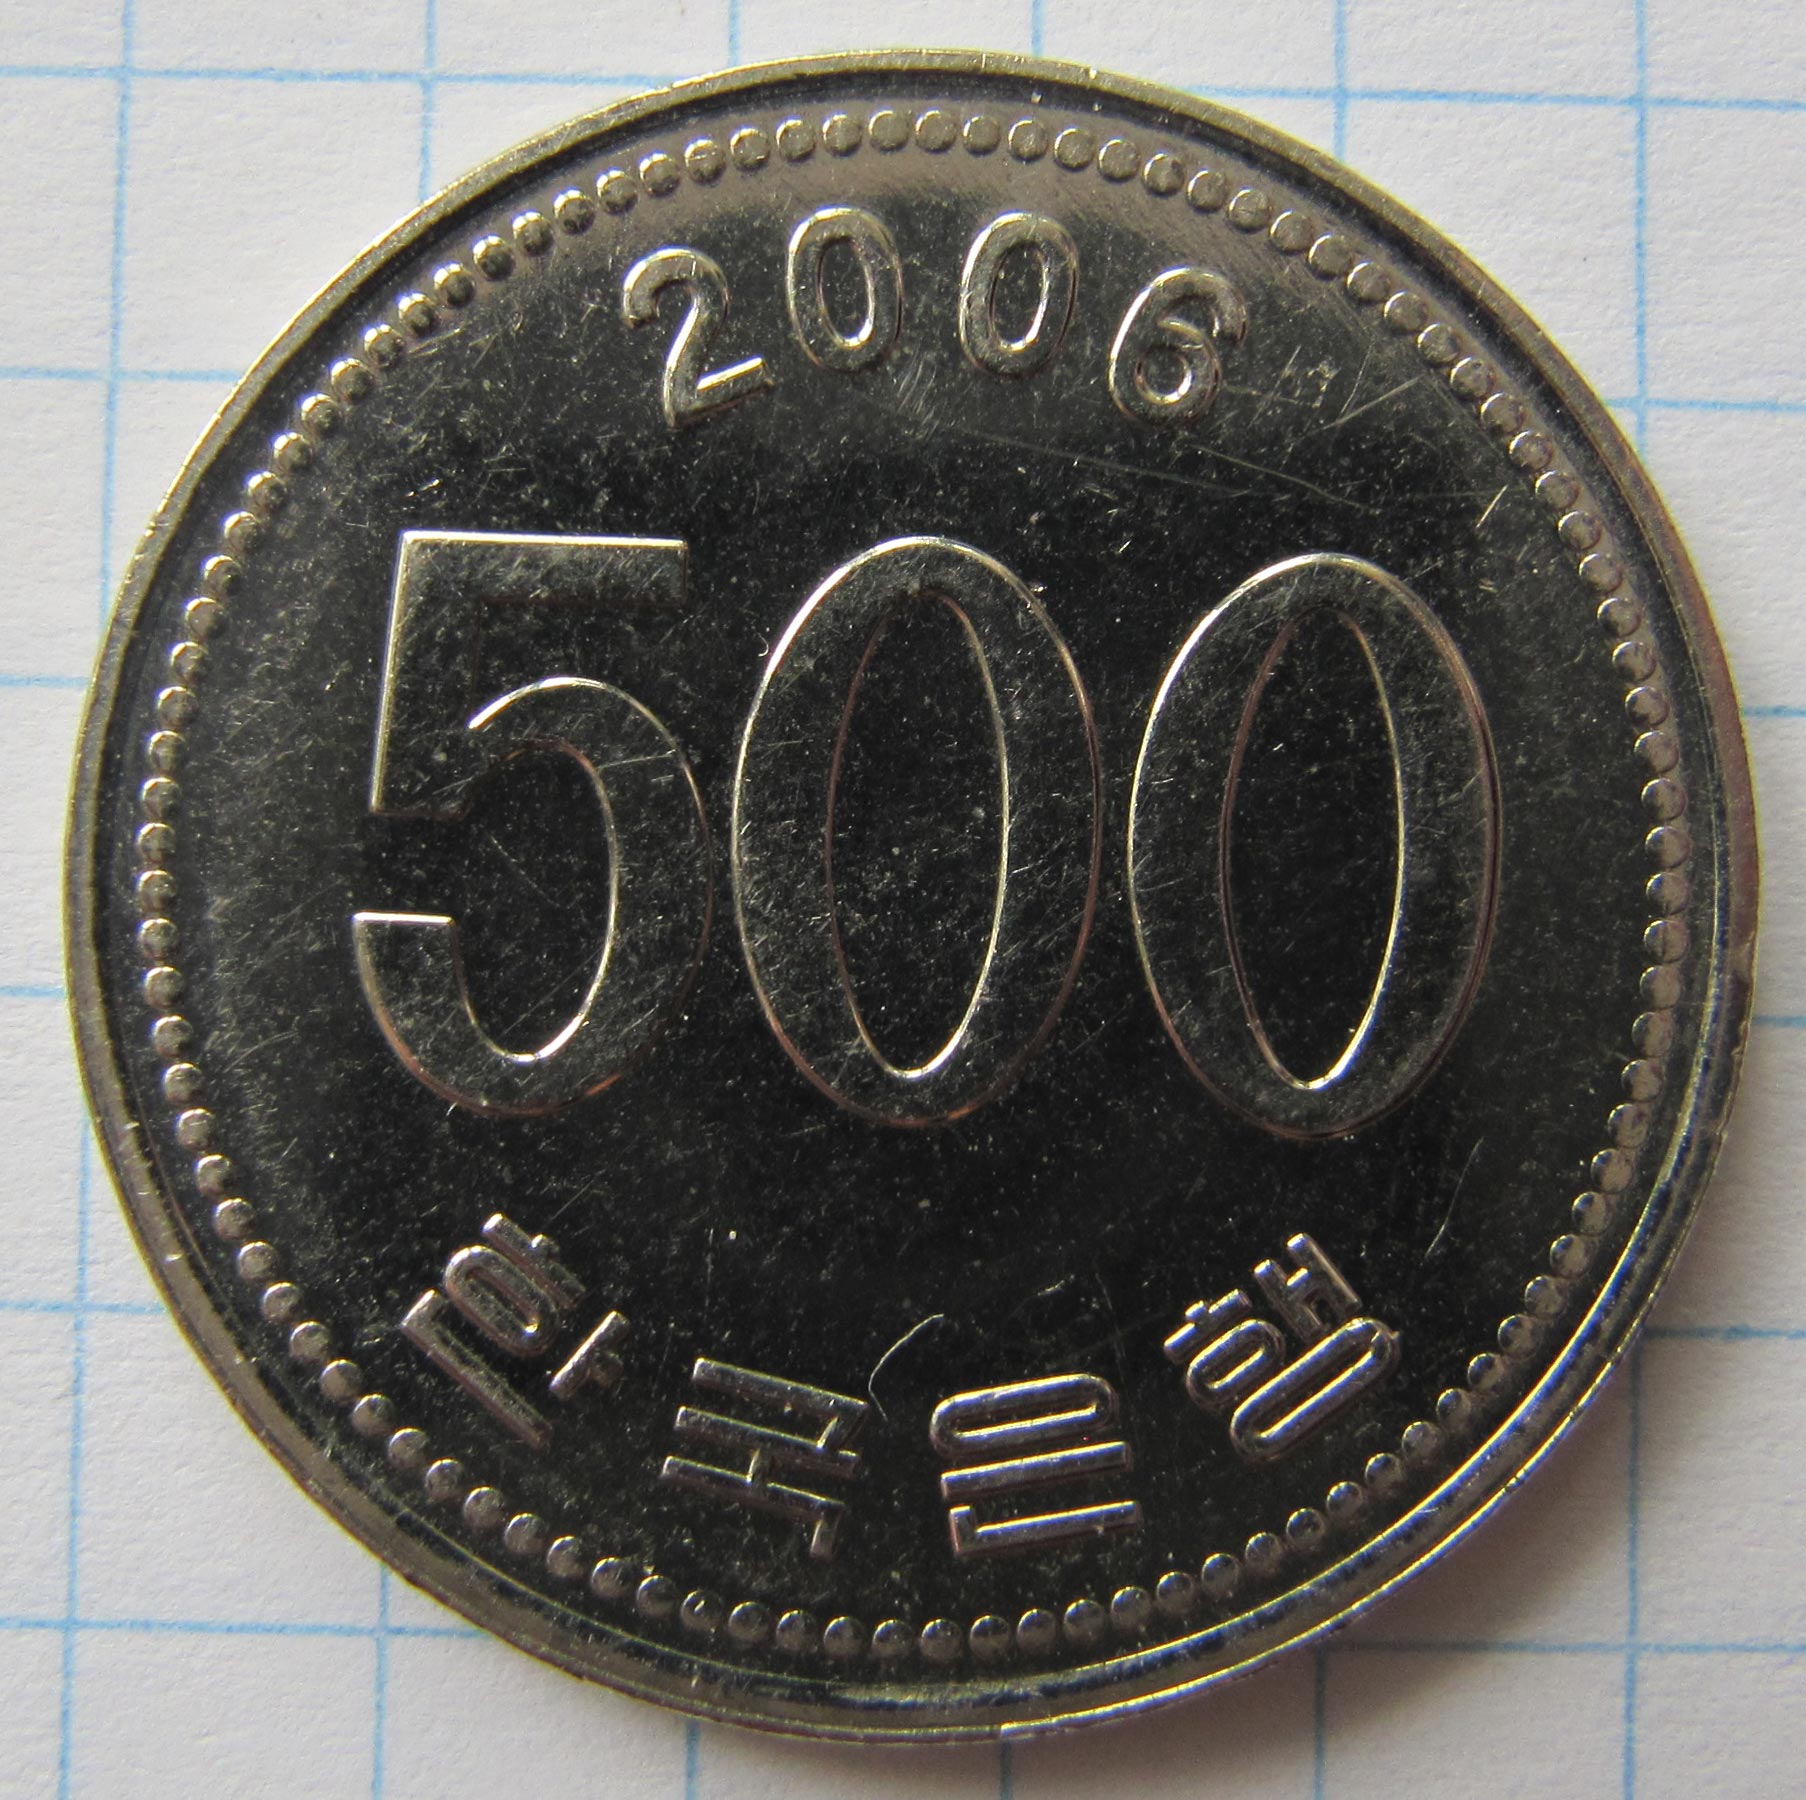 500 Китайских юаней монета